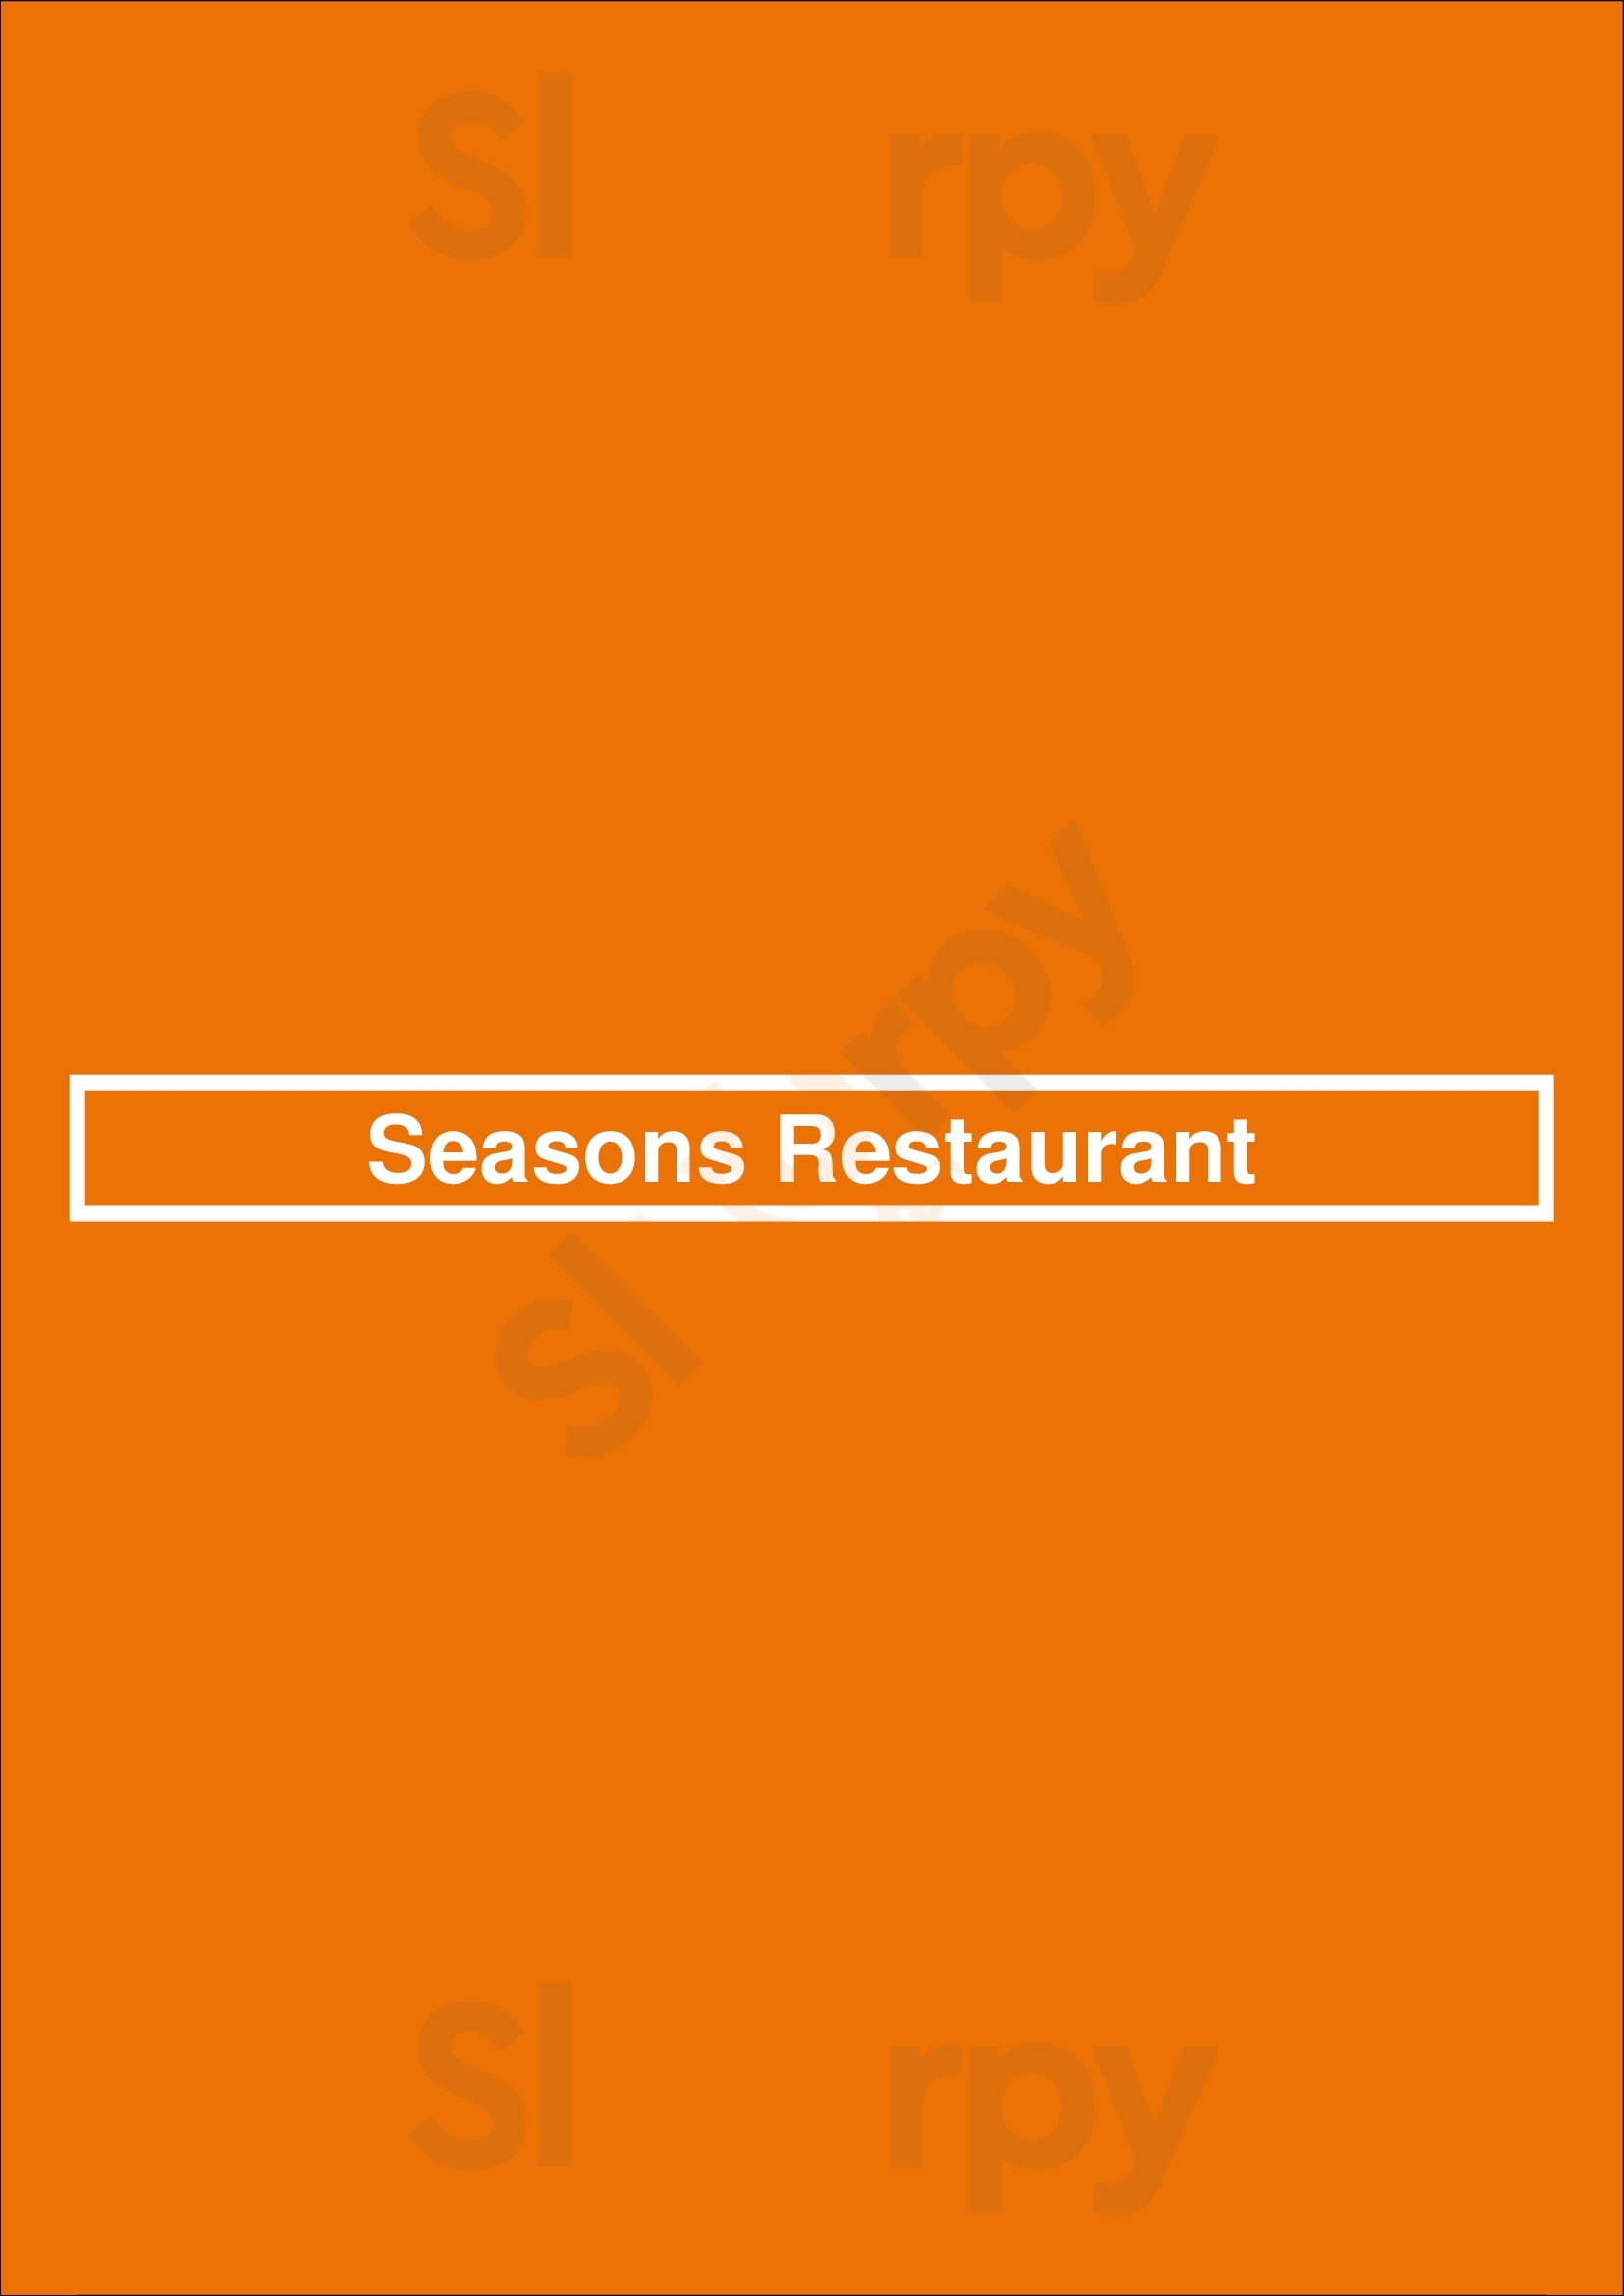 Seasons Restaurant Dublin Menu - 1